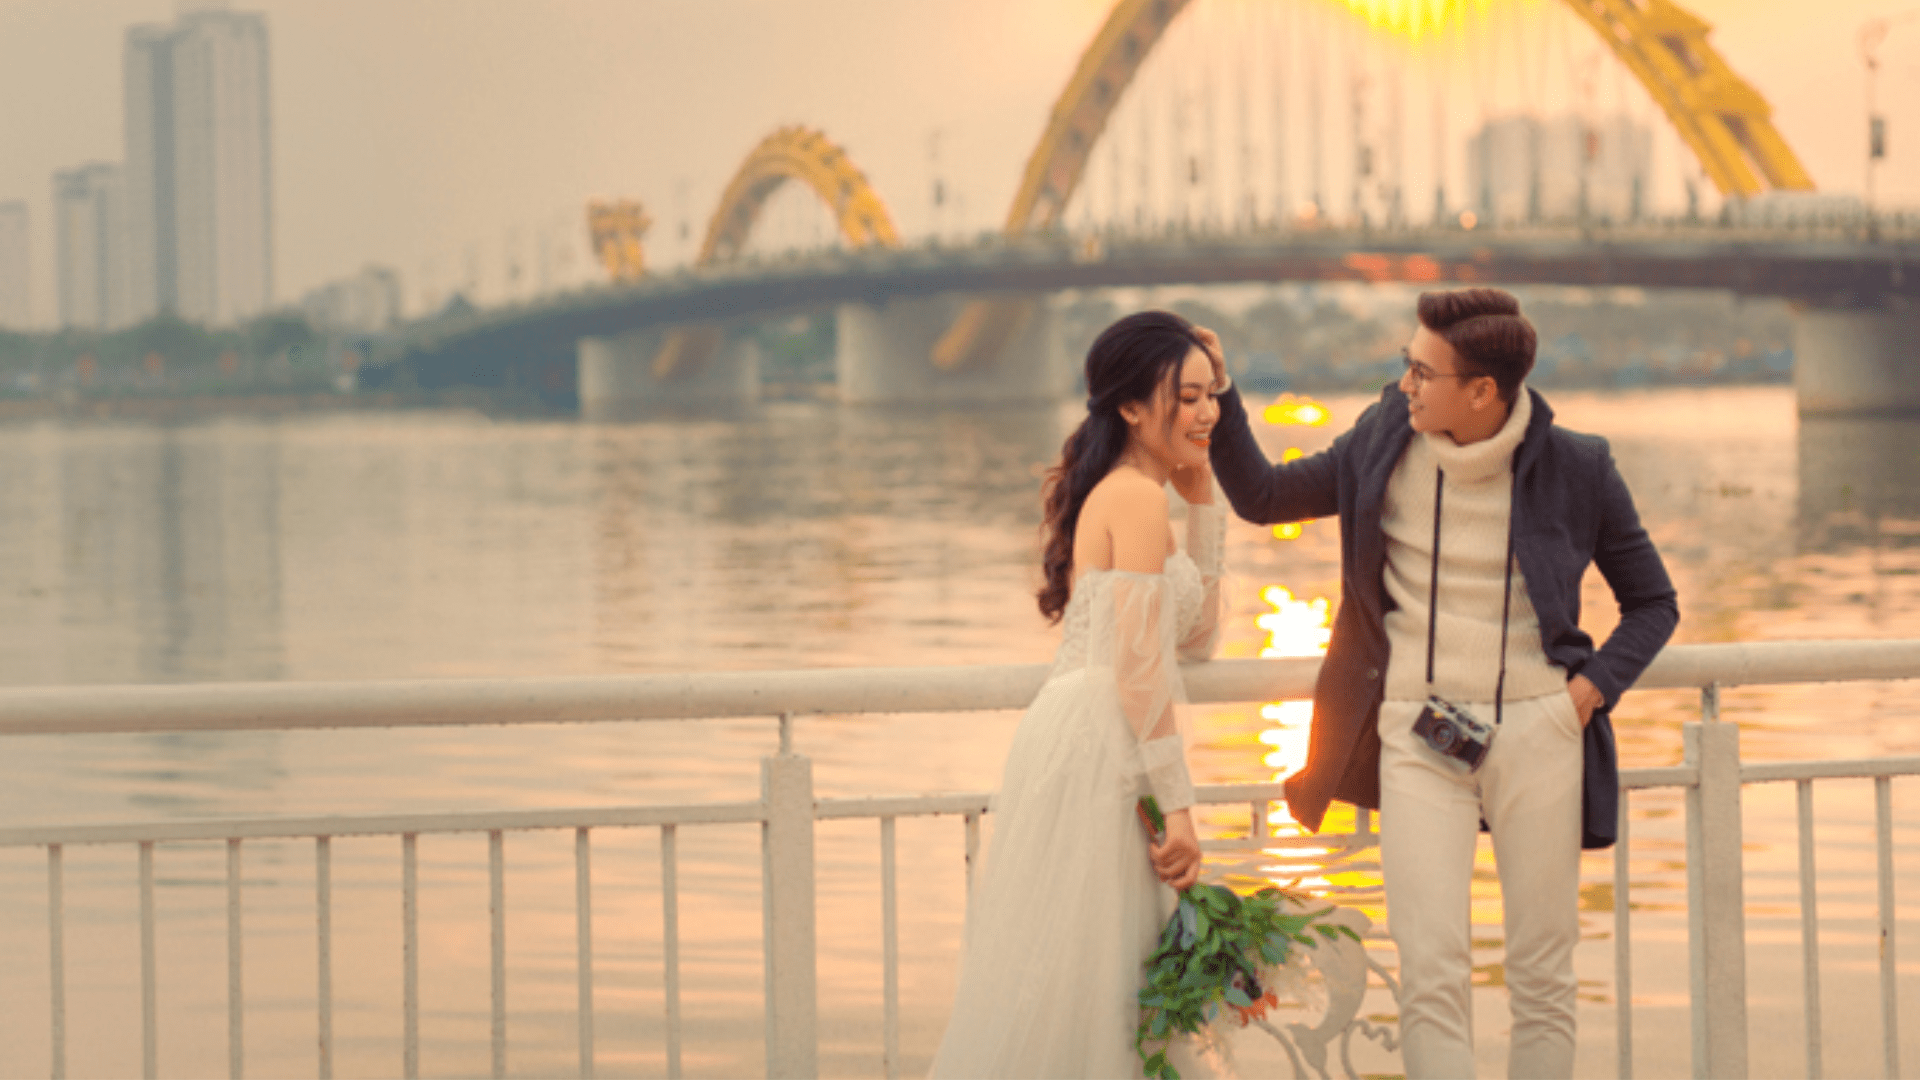 Hoa Mai Wedding - Địa chỉ chụp ảnh cưới đẹp tại Đà Nẵng